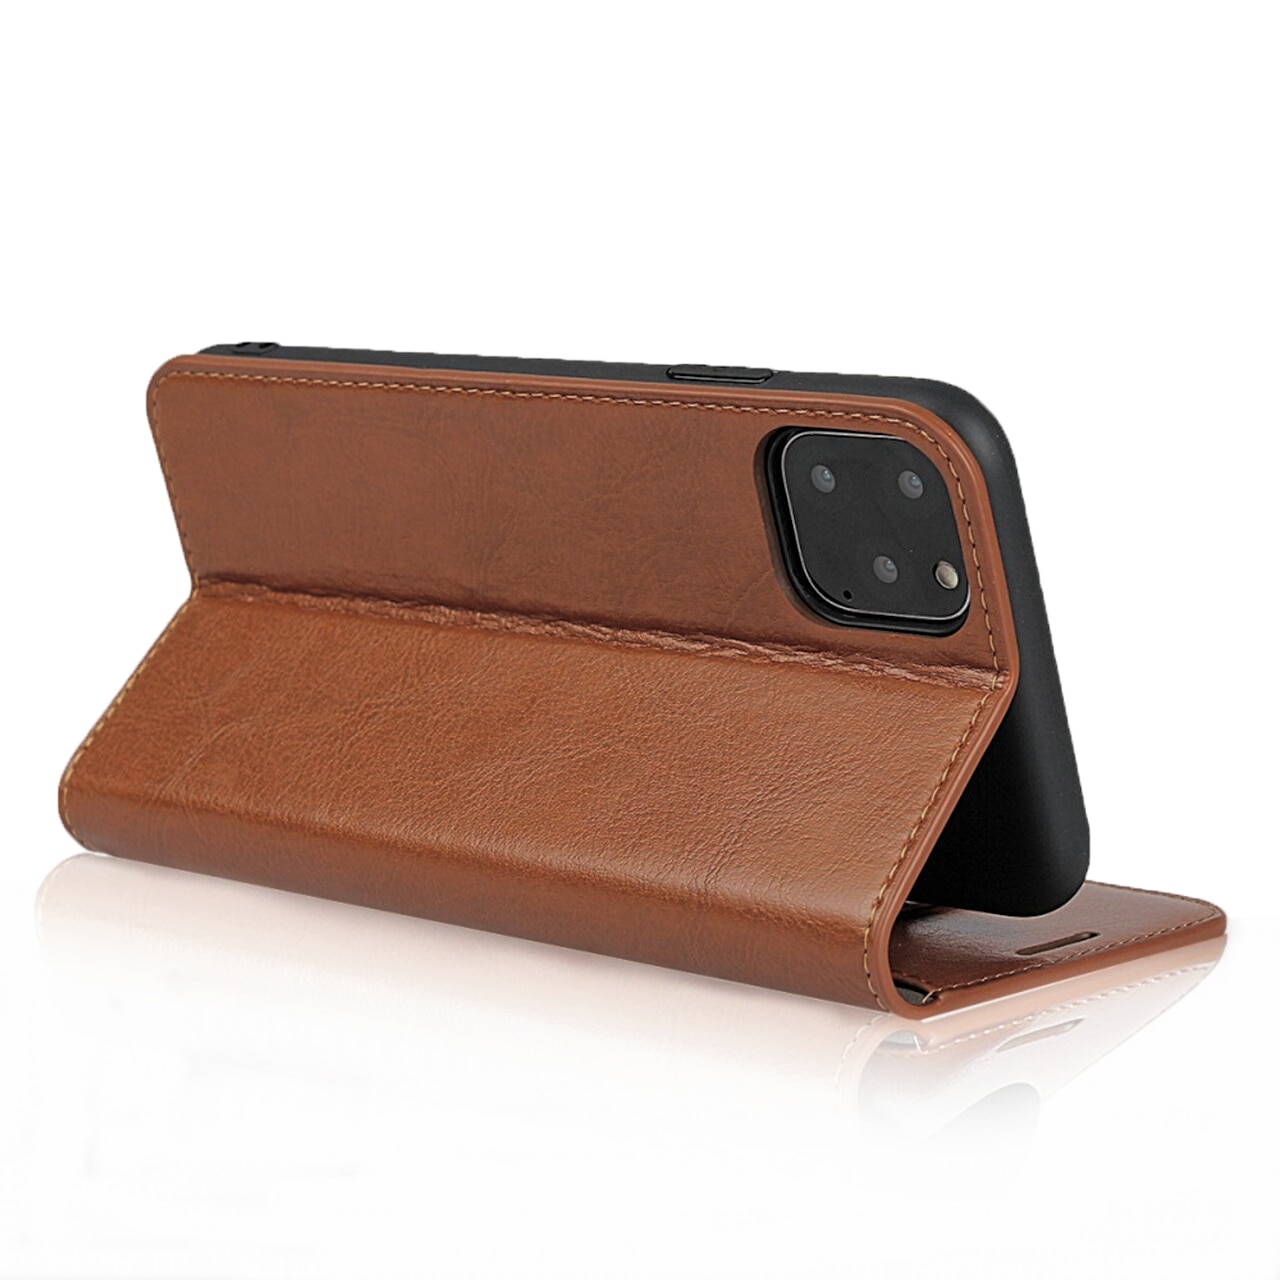 Funda cartera de cuero genuino iPhone 11 Pro marrón